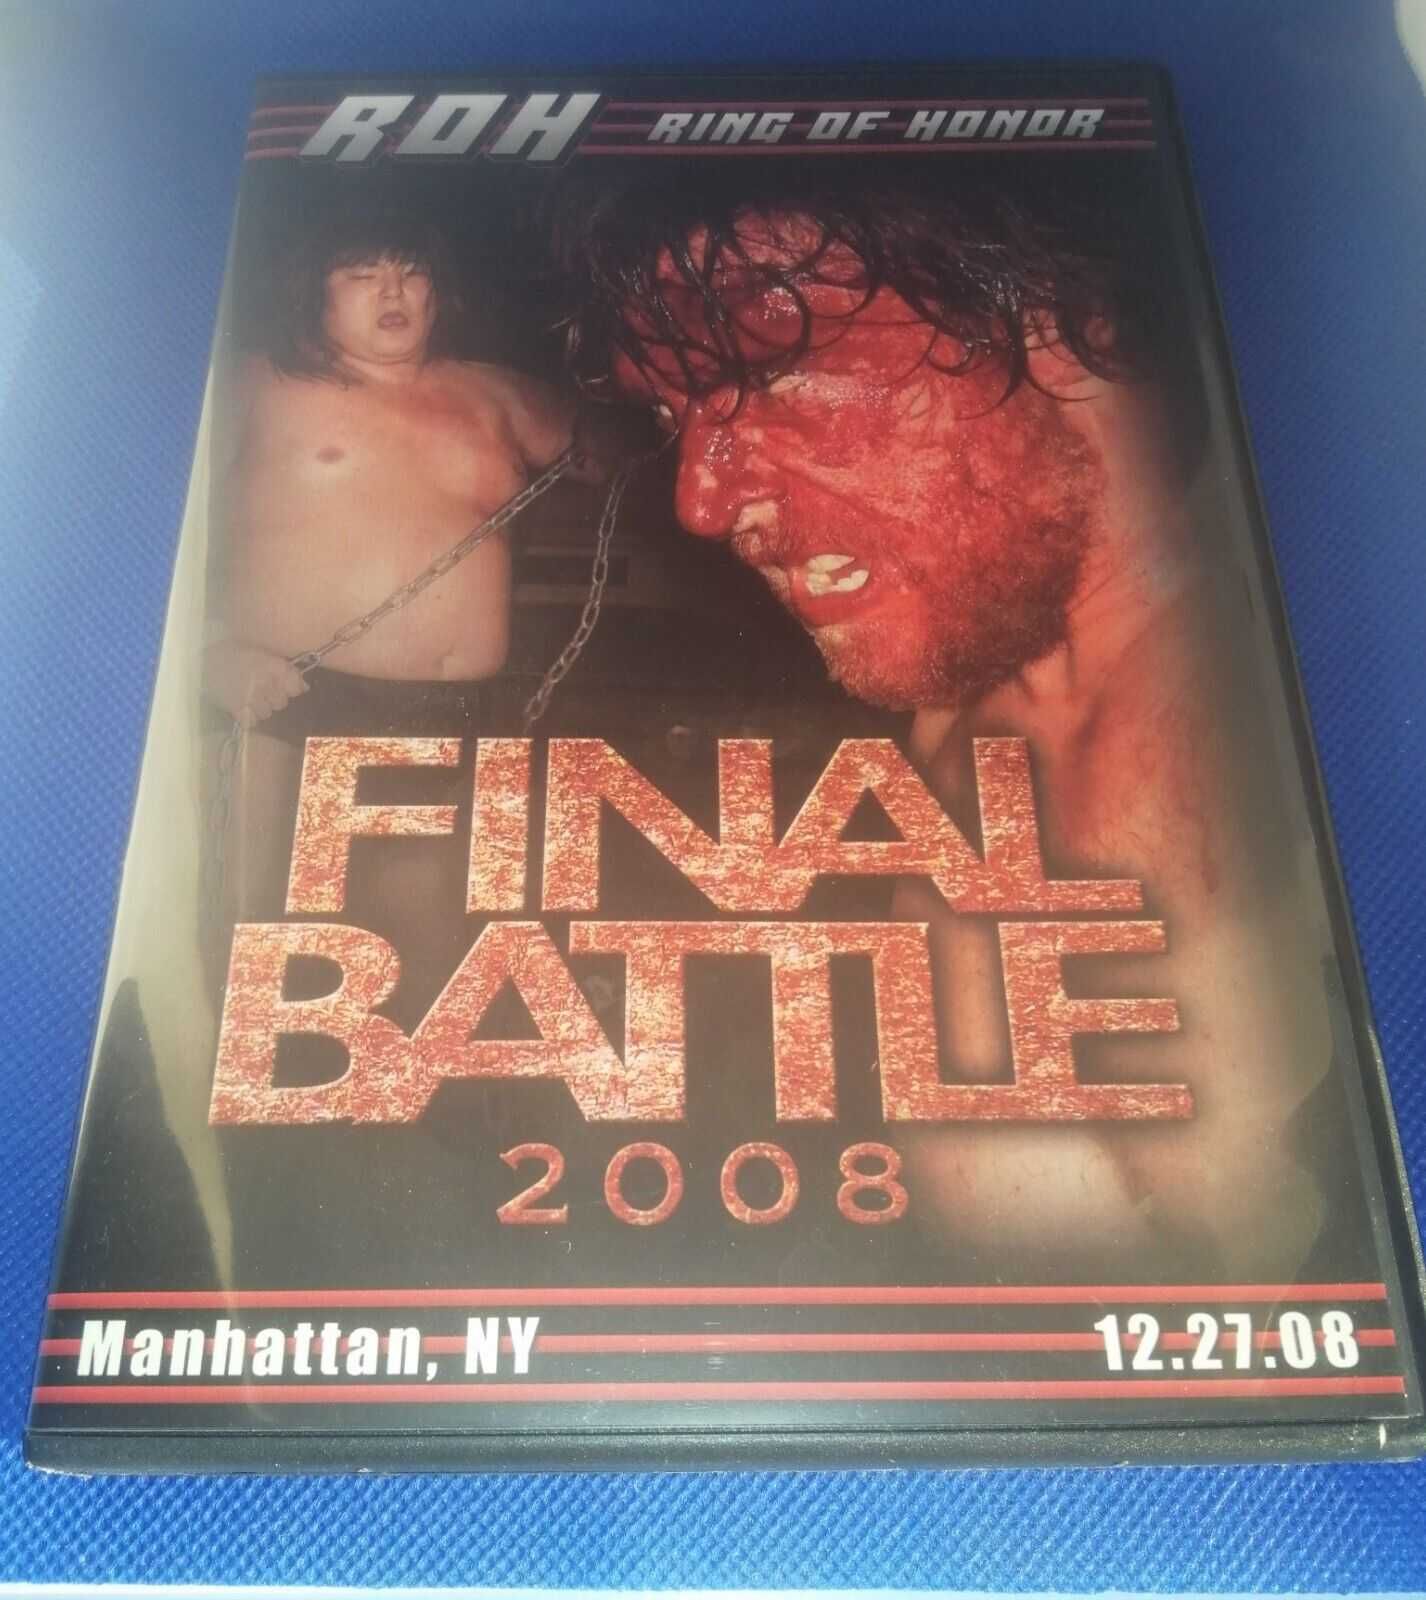 Płyta DVD ROH Wrestling Final Battle 2008